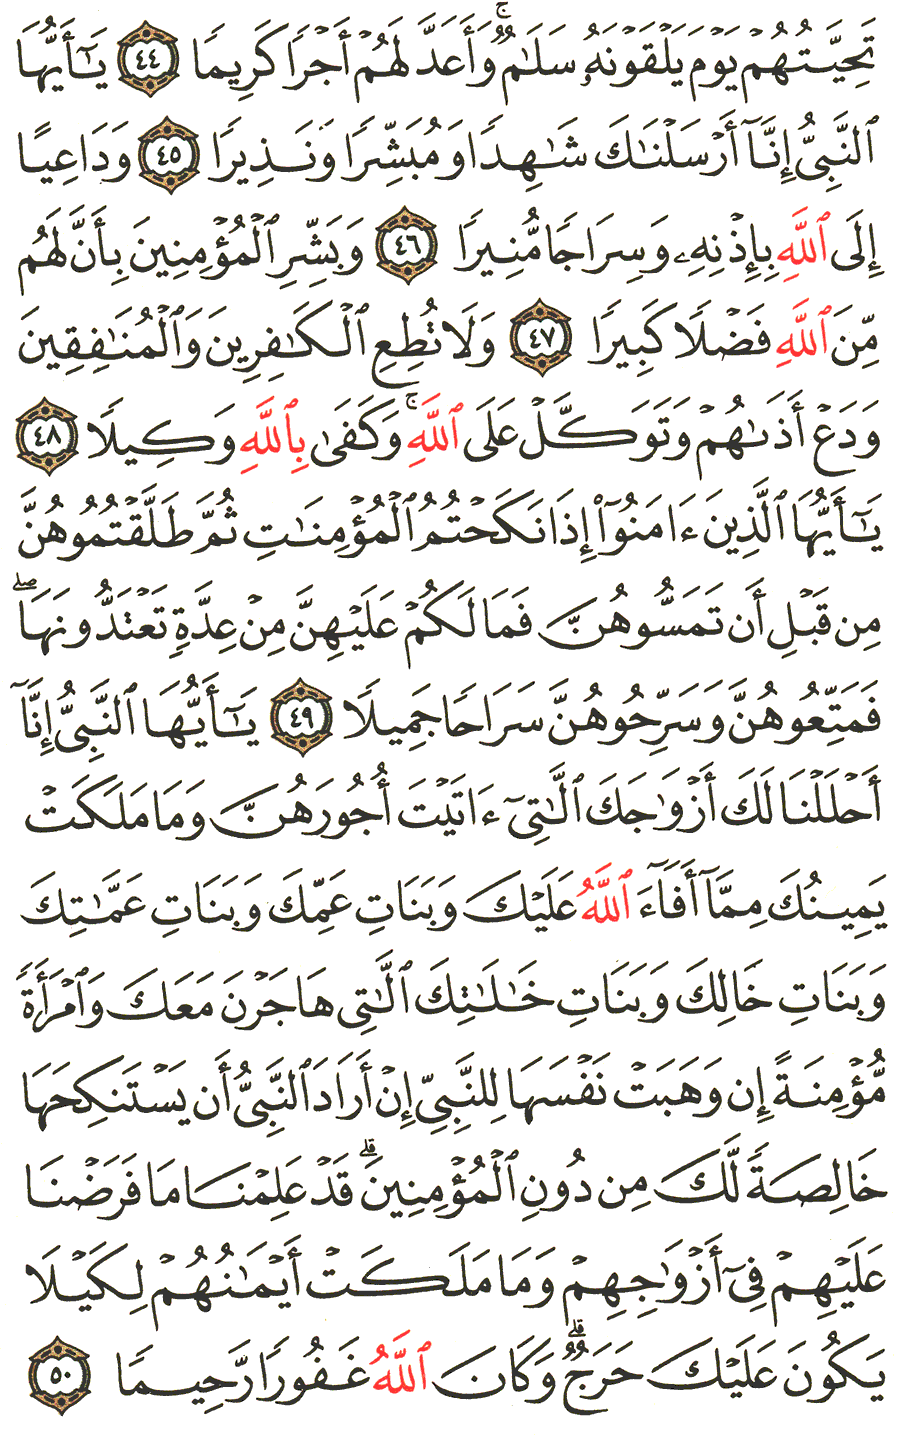 الصفحة 424 من القرآن الكريم